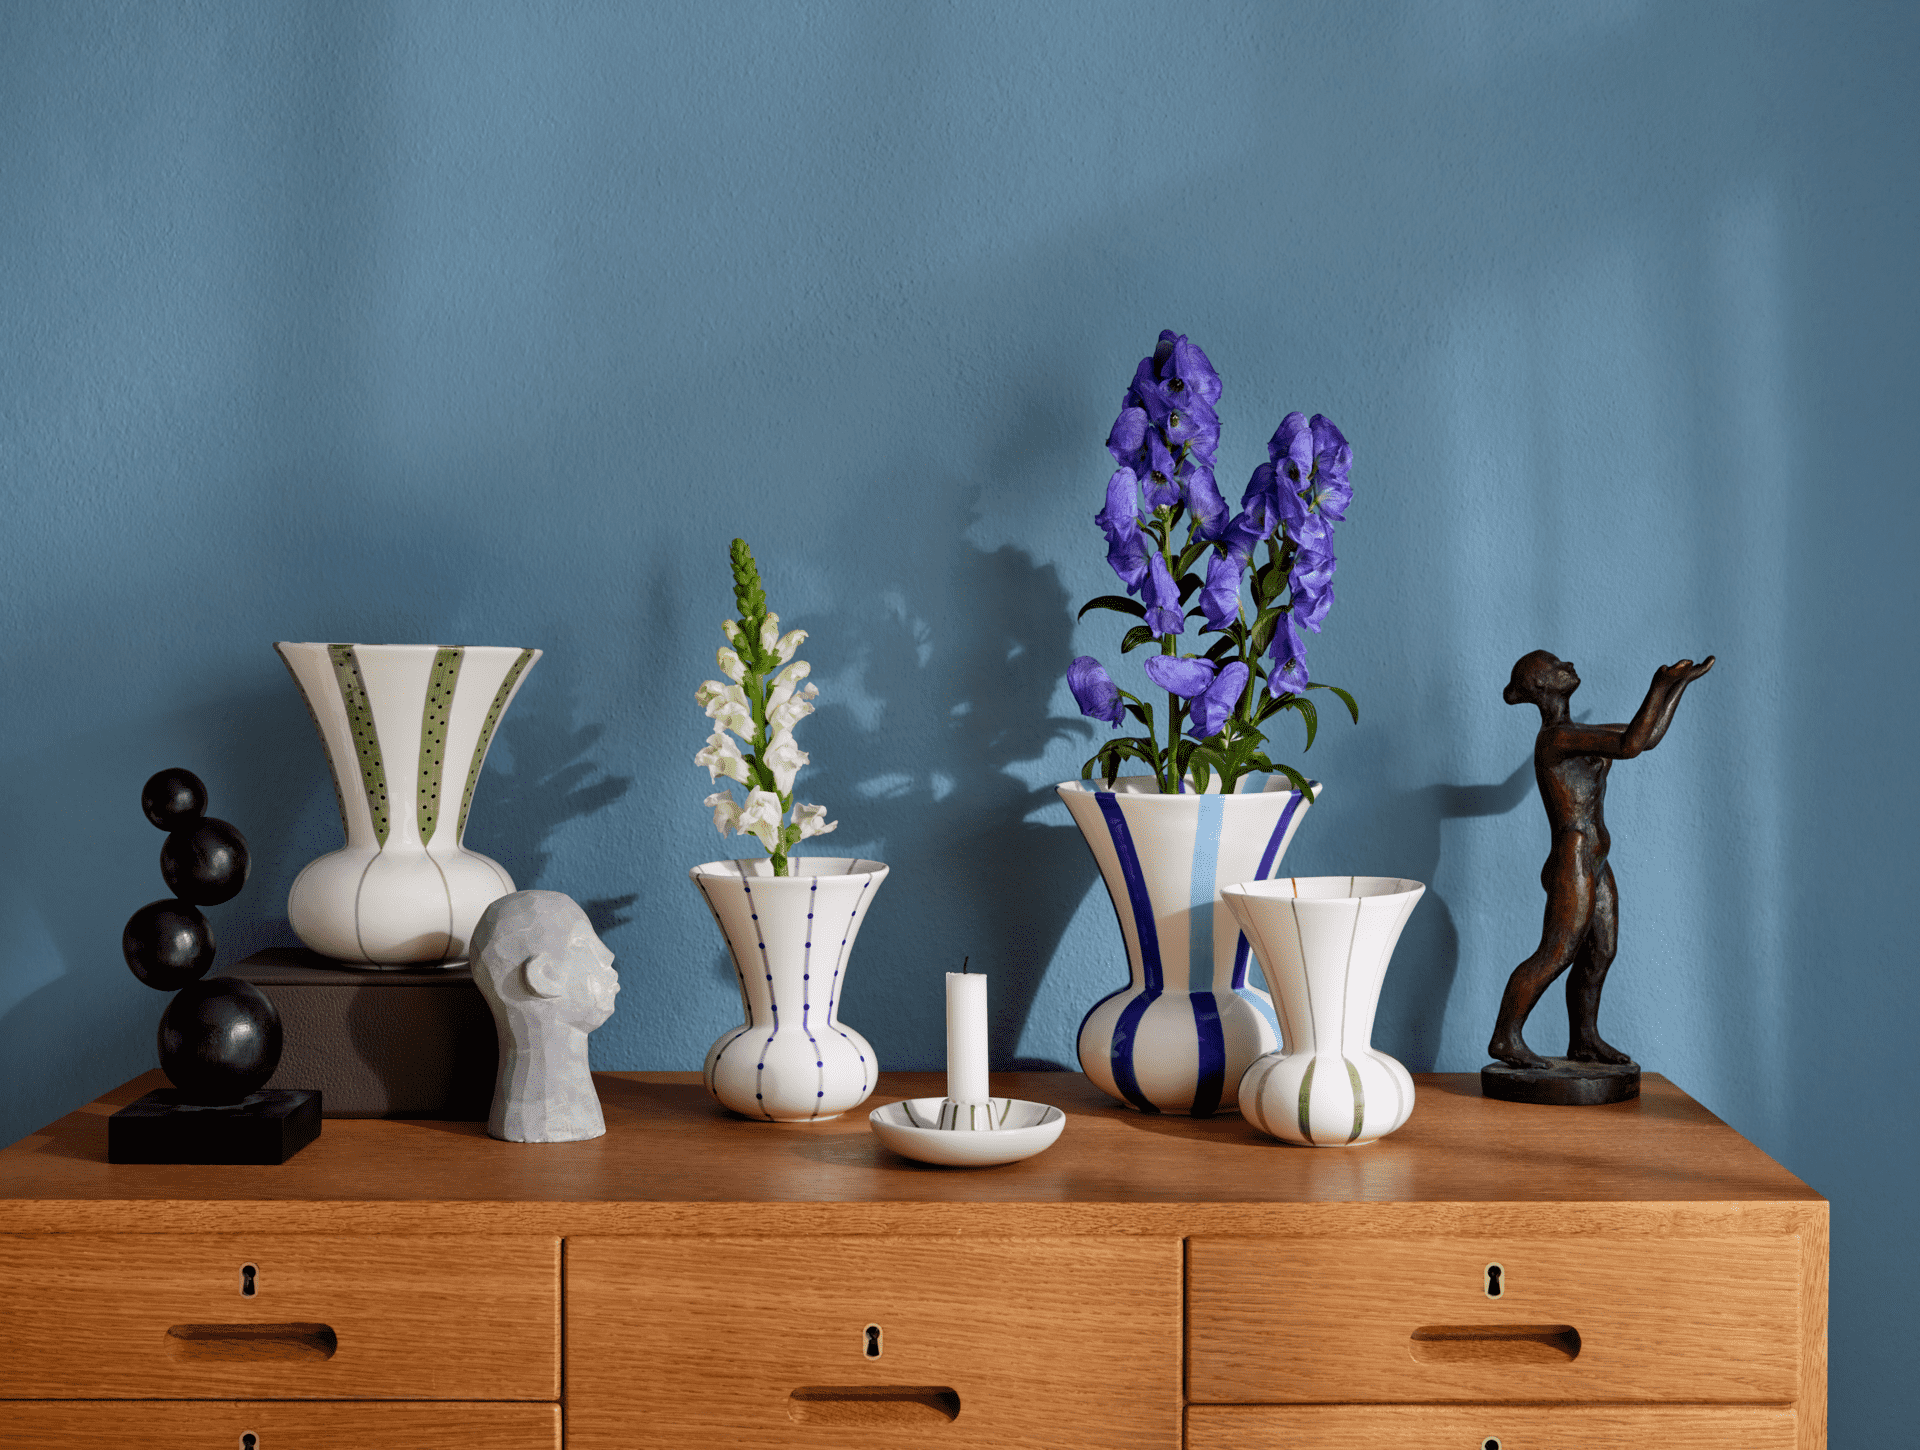 Vase mit Ikebanaeinsatz